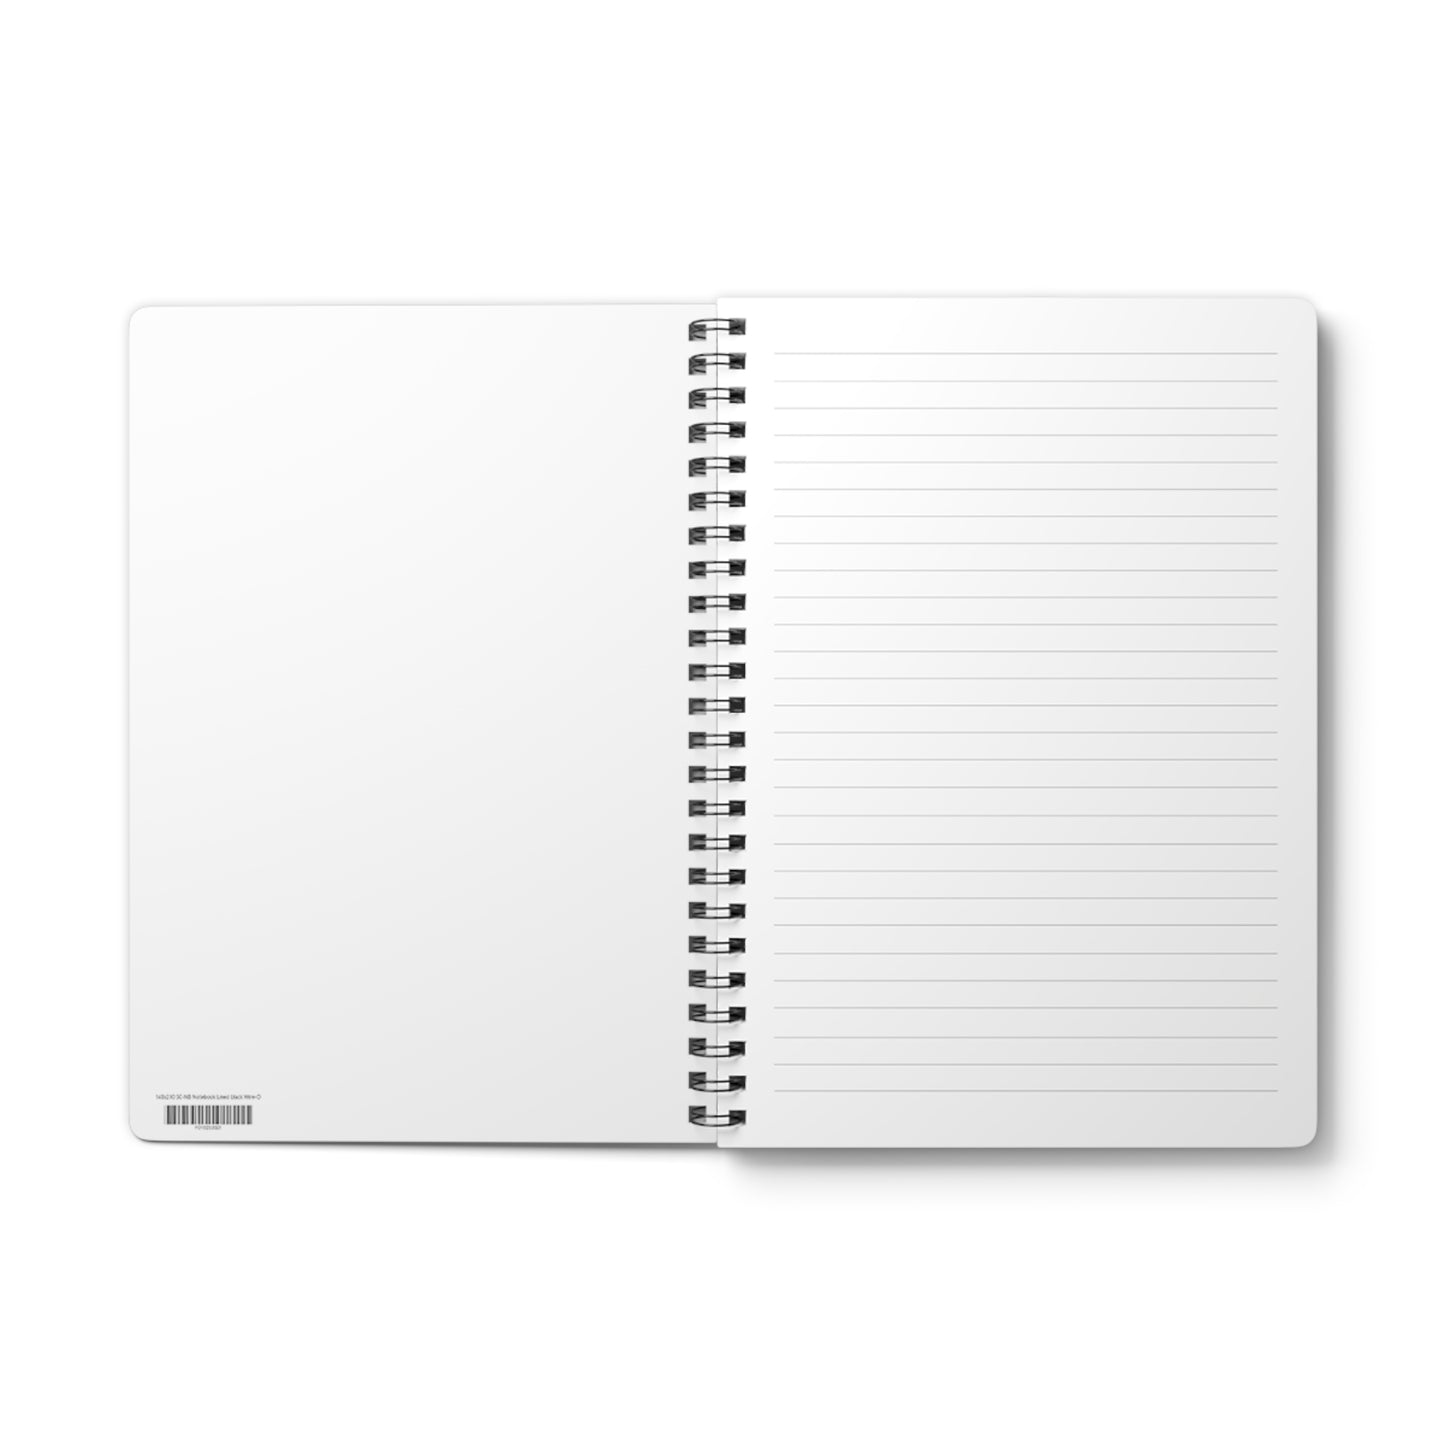 The Grind - A5 Wirebound Notebook